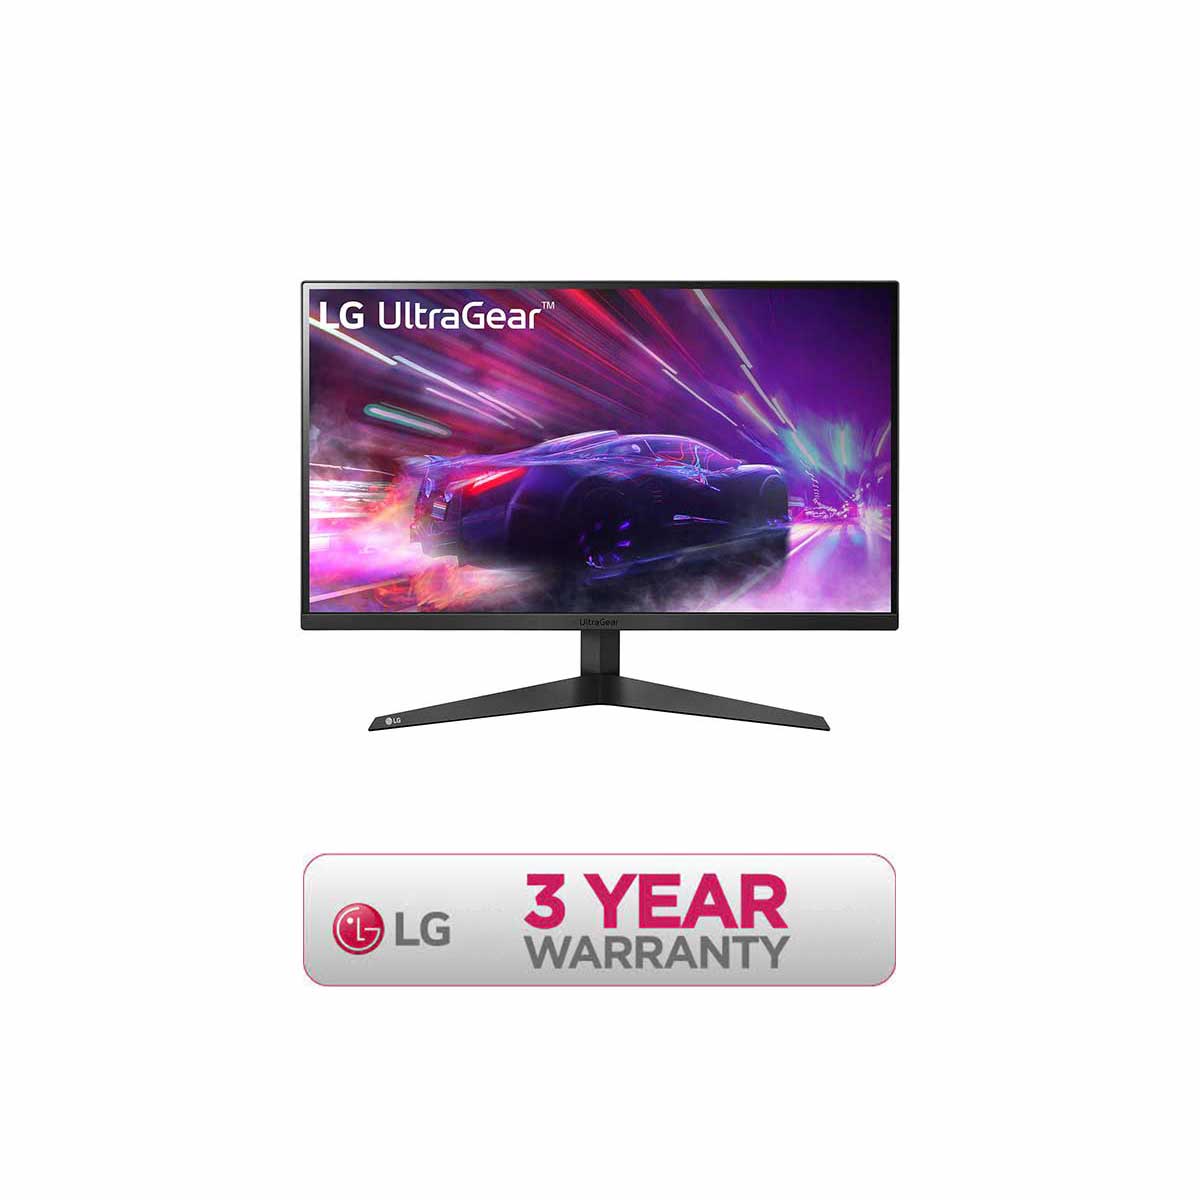 LG 27GQ50F UltraGear 27 Gaming Monitor 165Hz AMD FreeSync FHD